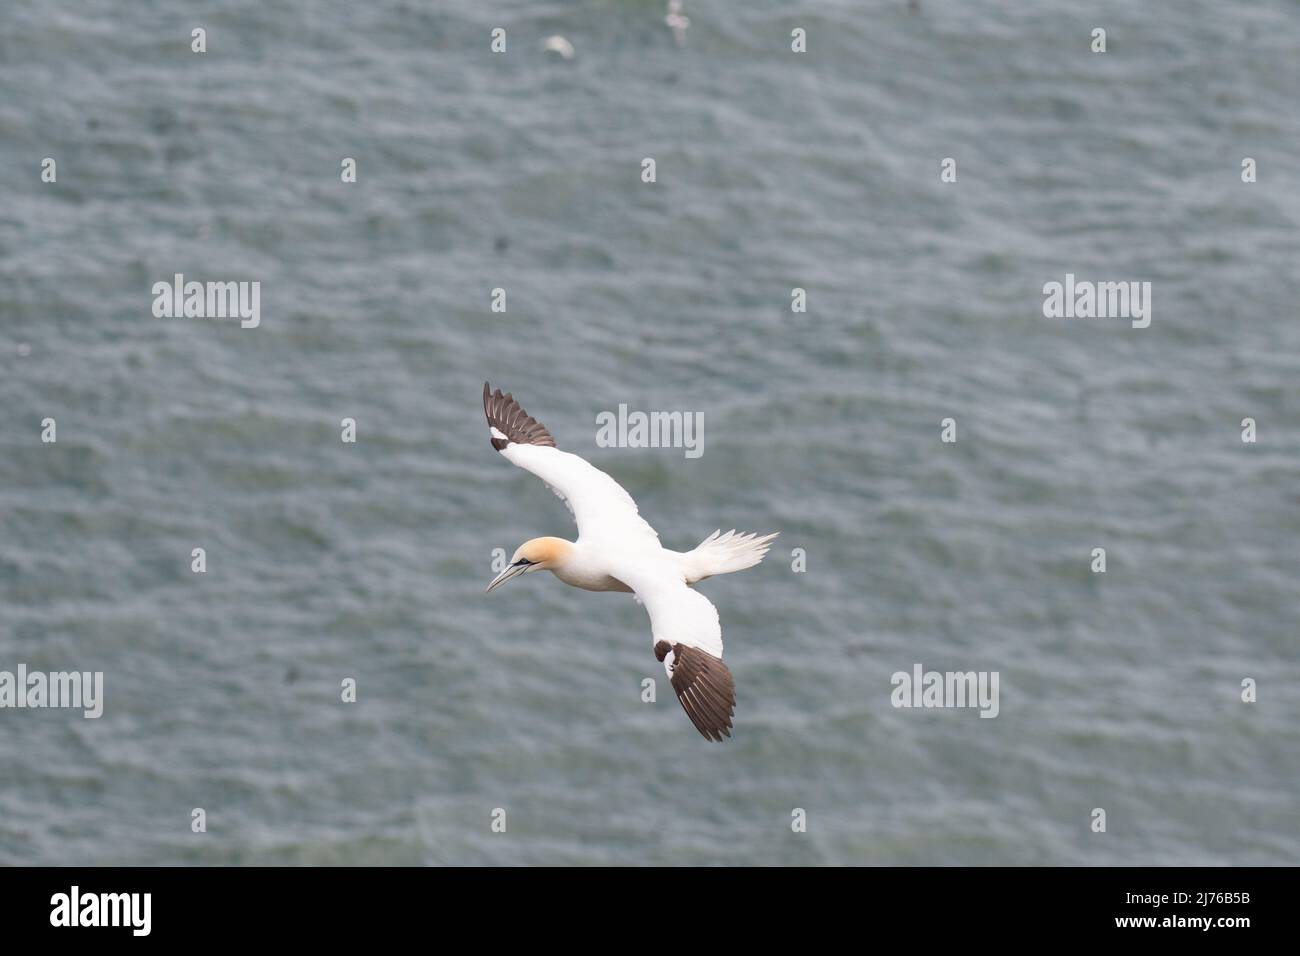 Gannet flying over sea Stock Photo